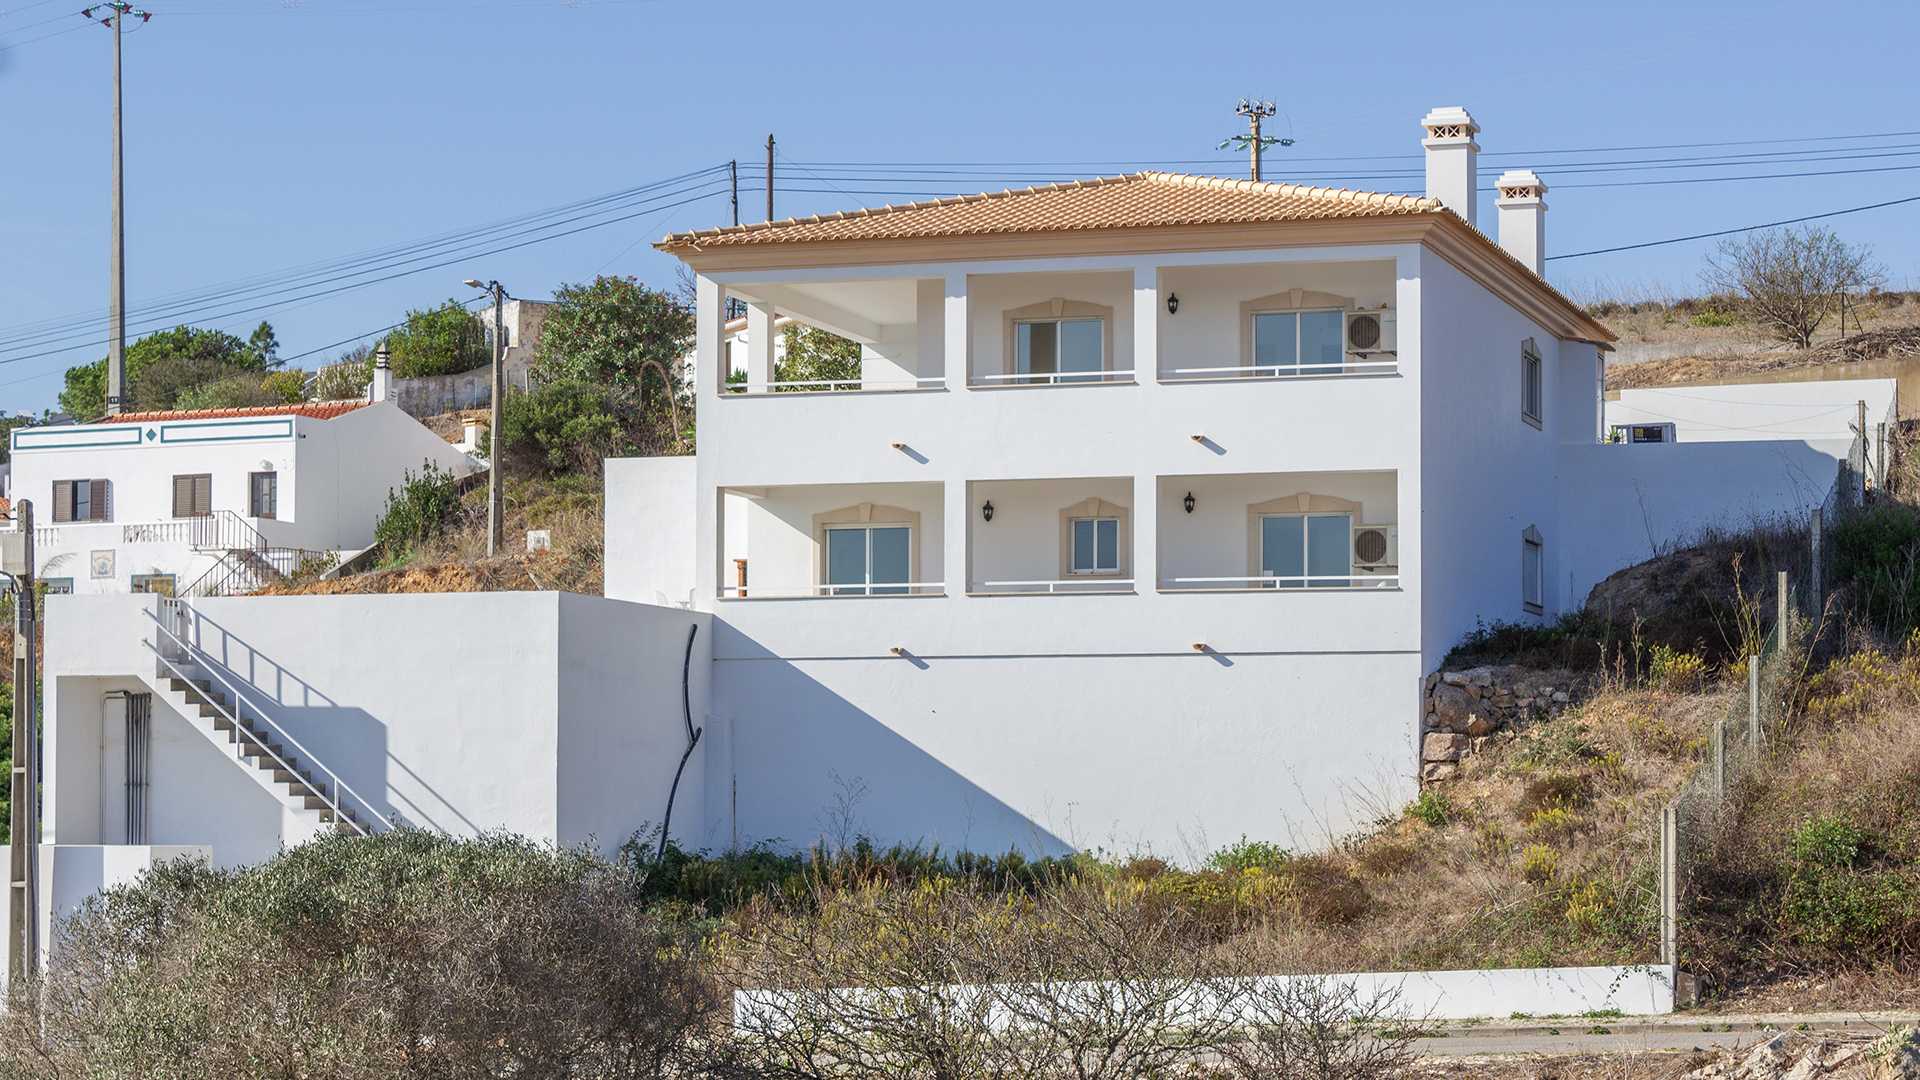 Moderne, gepflegte 4 SZ Villa mit Pool in einem ruhigen Weiler,  West Algarve | LG2176 Modernes, gepflegtes Anwesen mit 4 Schlafzimmern in einem ruhigen, ländlichen Ort in der West Algarve mit fantastischem Blick auf die Landschaft. Diese nach Südosten ausgerichtete Villa verfügt über umlaufende Terrassen und einen schönen  Aussenbereich mit grossem Swimmingpool. Der nächste Strand ist nur 2 Autominuten entfernt!